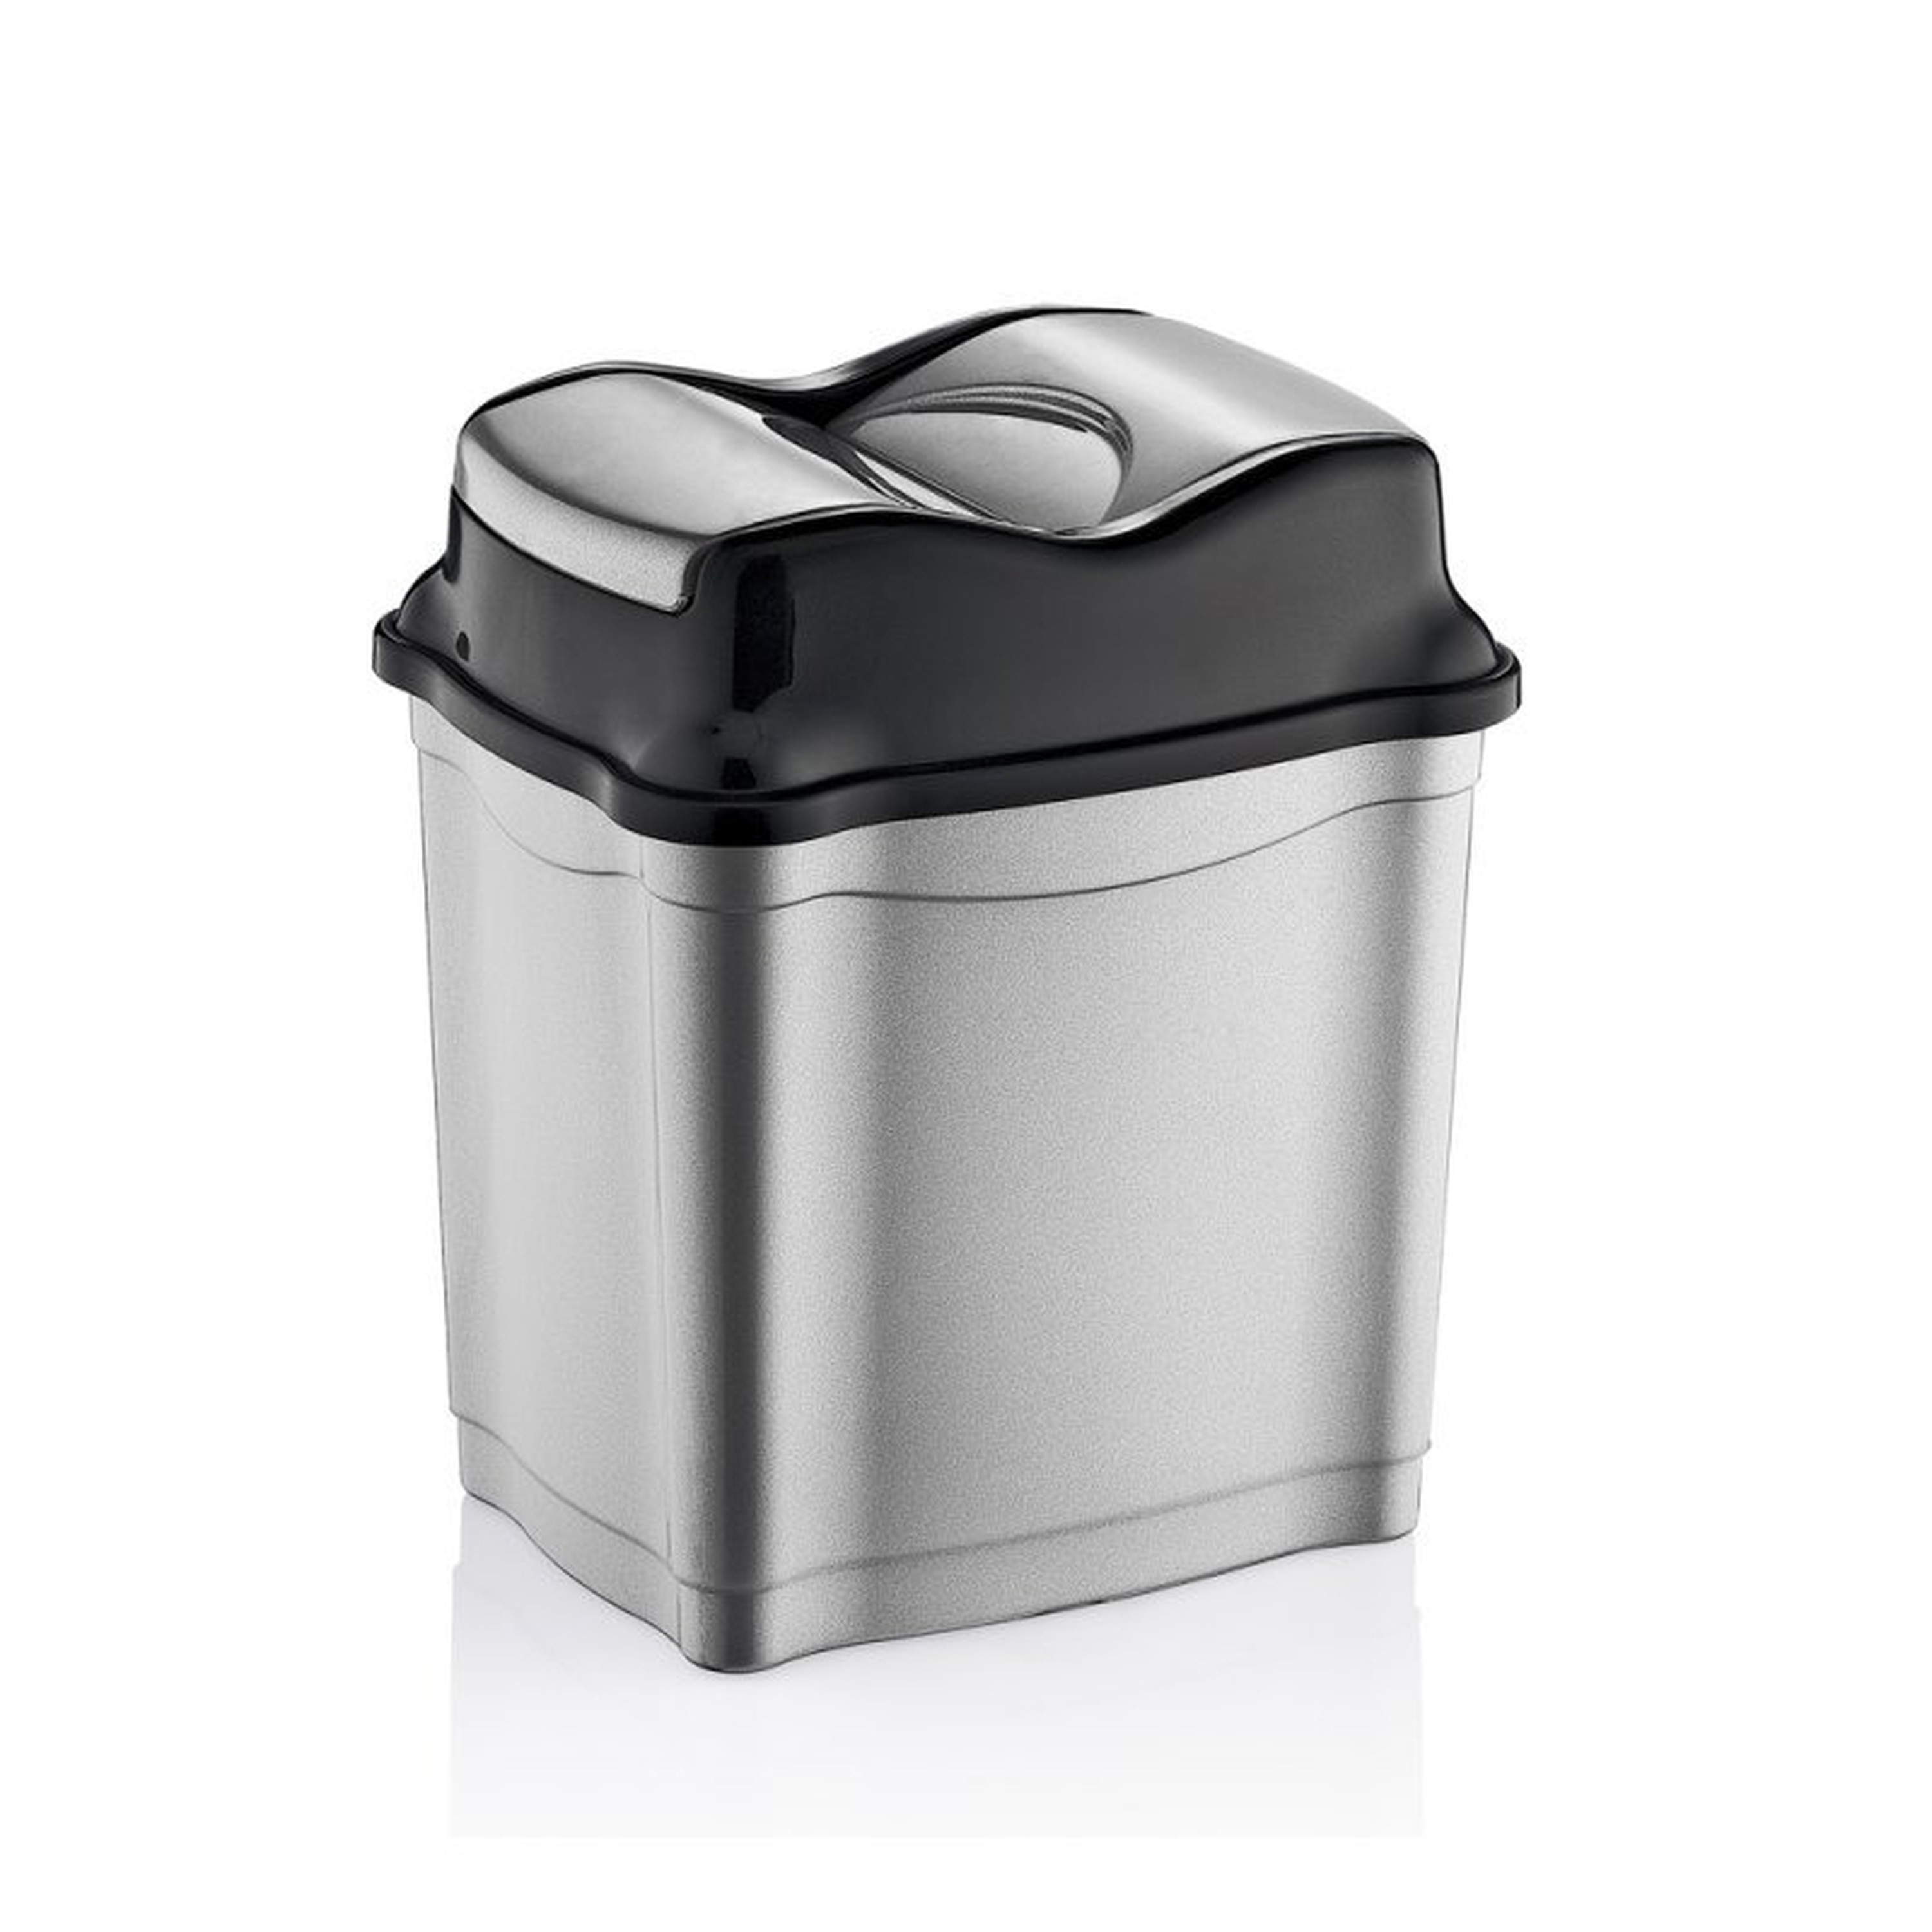 Zilver/zwarte vuilnisbak/vuilnisemmer kunststof 28 liter - Vuilnisemmers/vuilnisbakken/prullenbakken - Kantoor/keuken prullenbakken